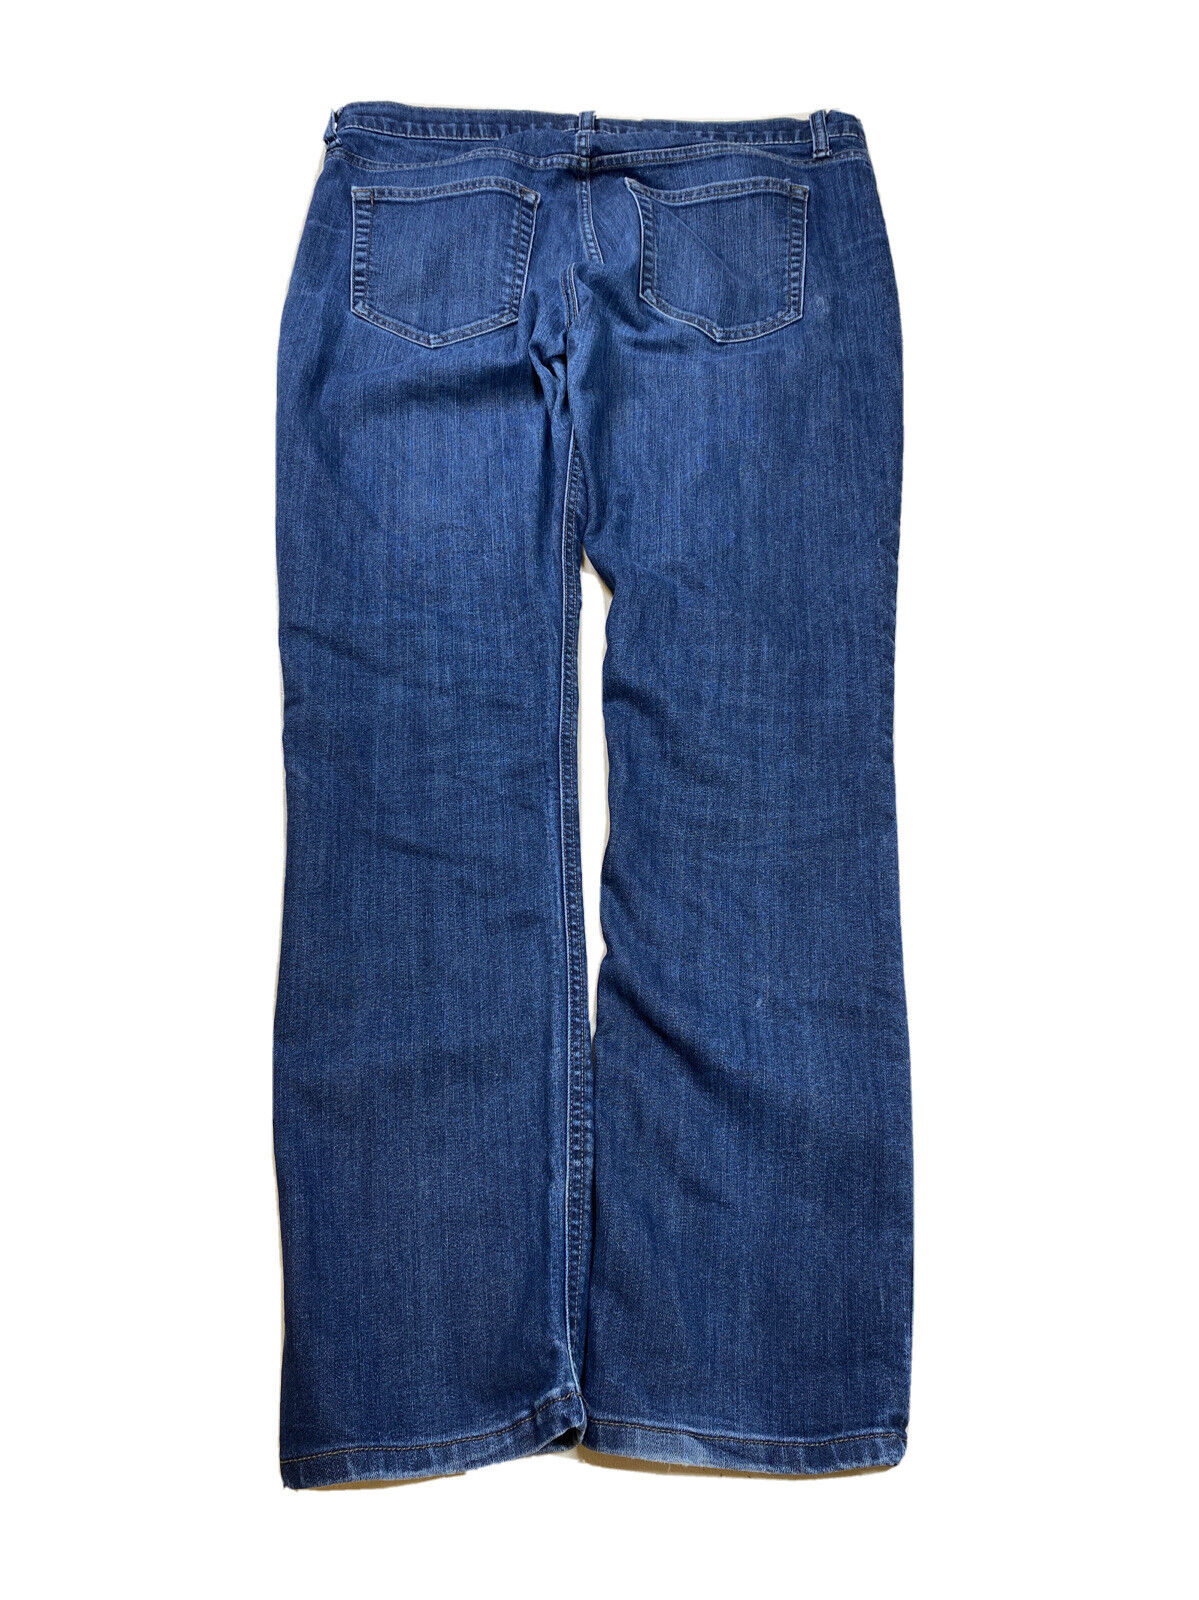 Lands' End Women's Dark Wash Canvas Denim Pin Straight Jeans - 32